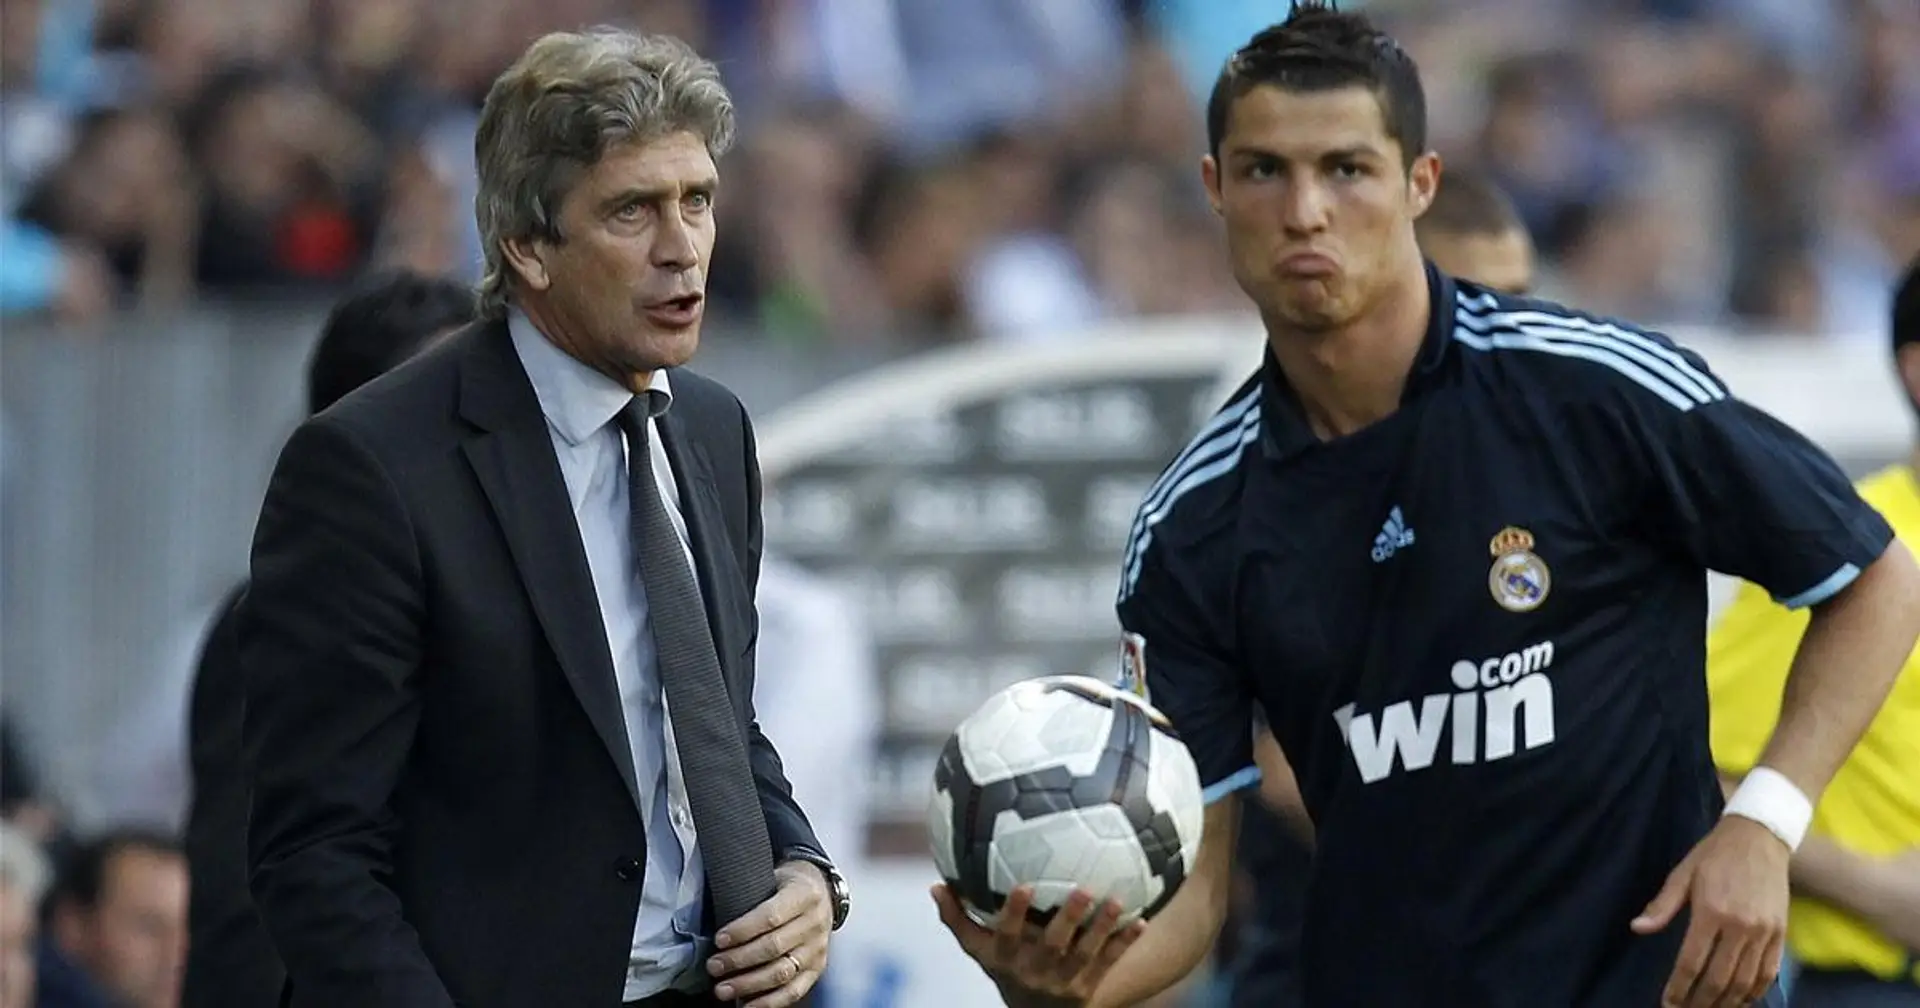 L'ancien entraîneur de Madrid, Manuel Pellegrini, insiste sur le fait qu'il a reçu une équipe déséquilibrée en 2009 - malgré 102 buts